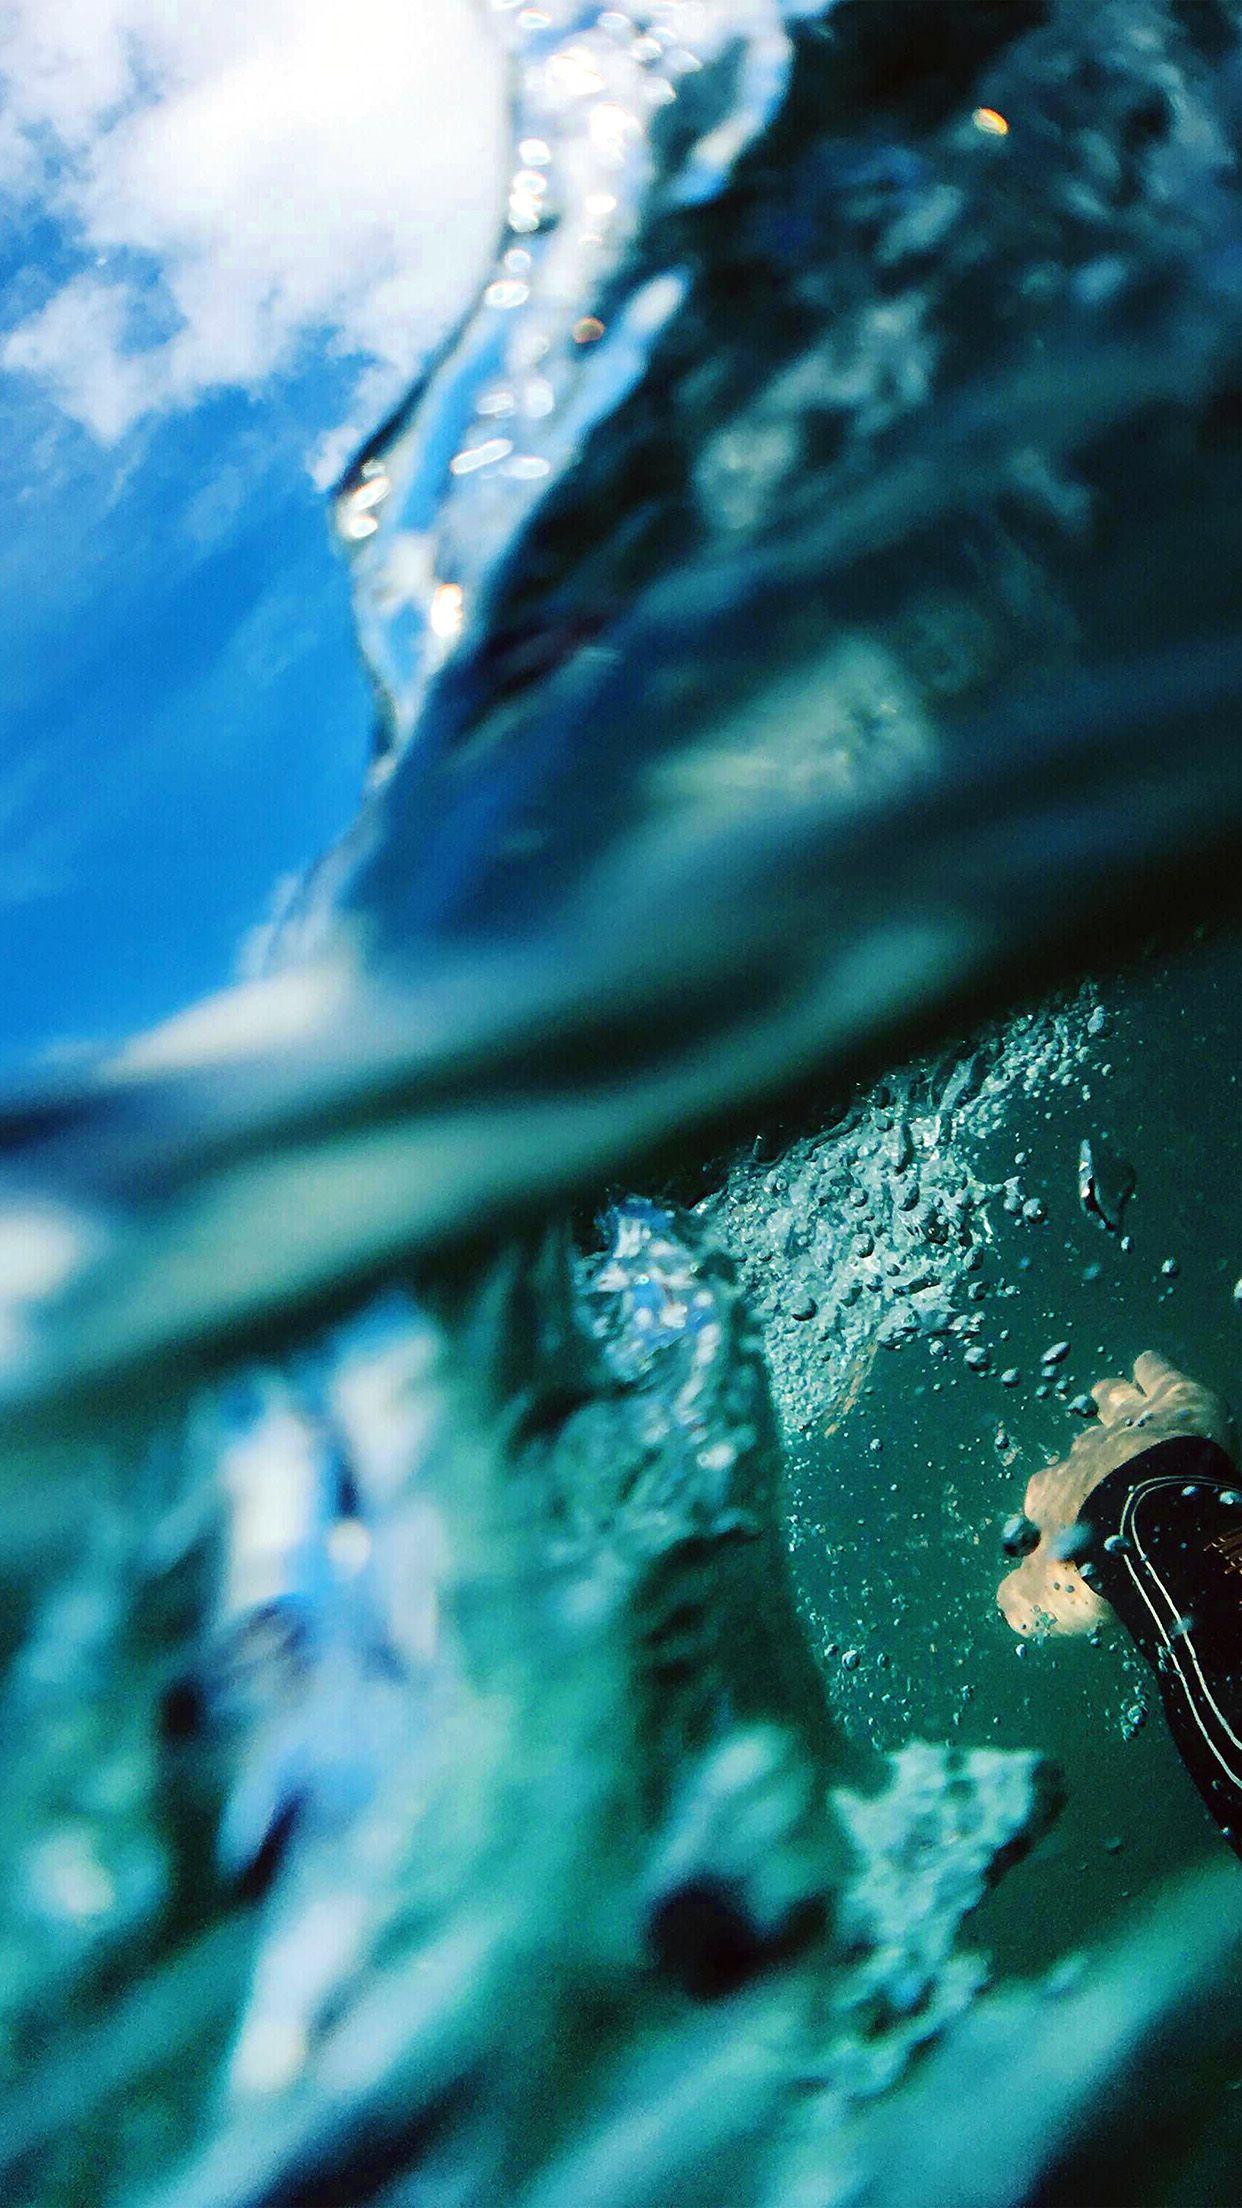 Underwater iPhone Wallpapers - Top Free Underwater iPhone Backgrounds ...